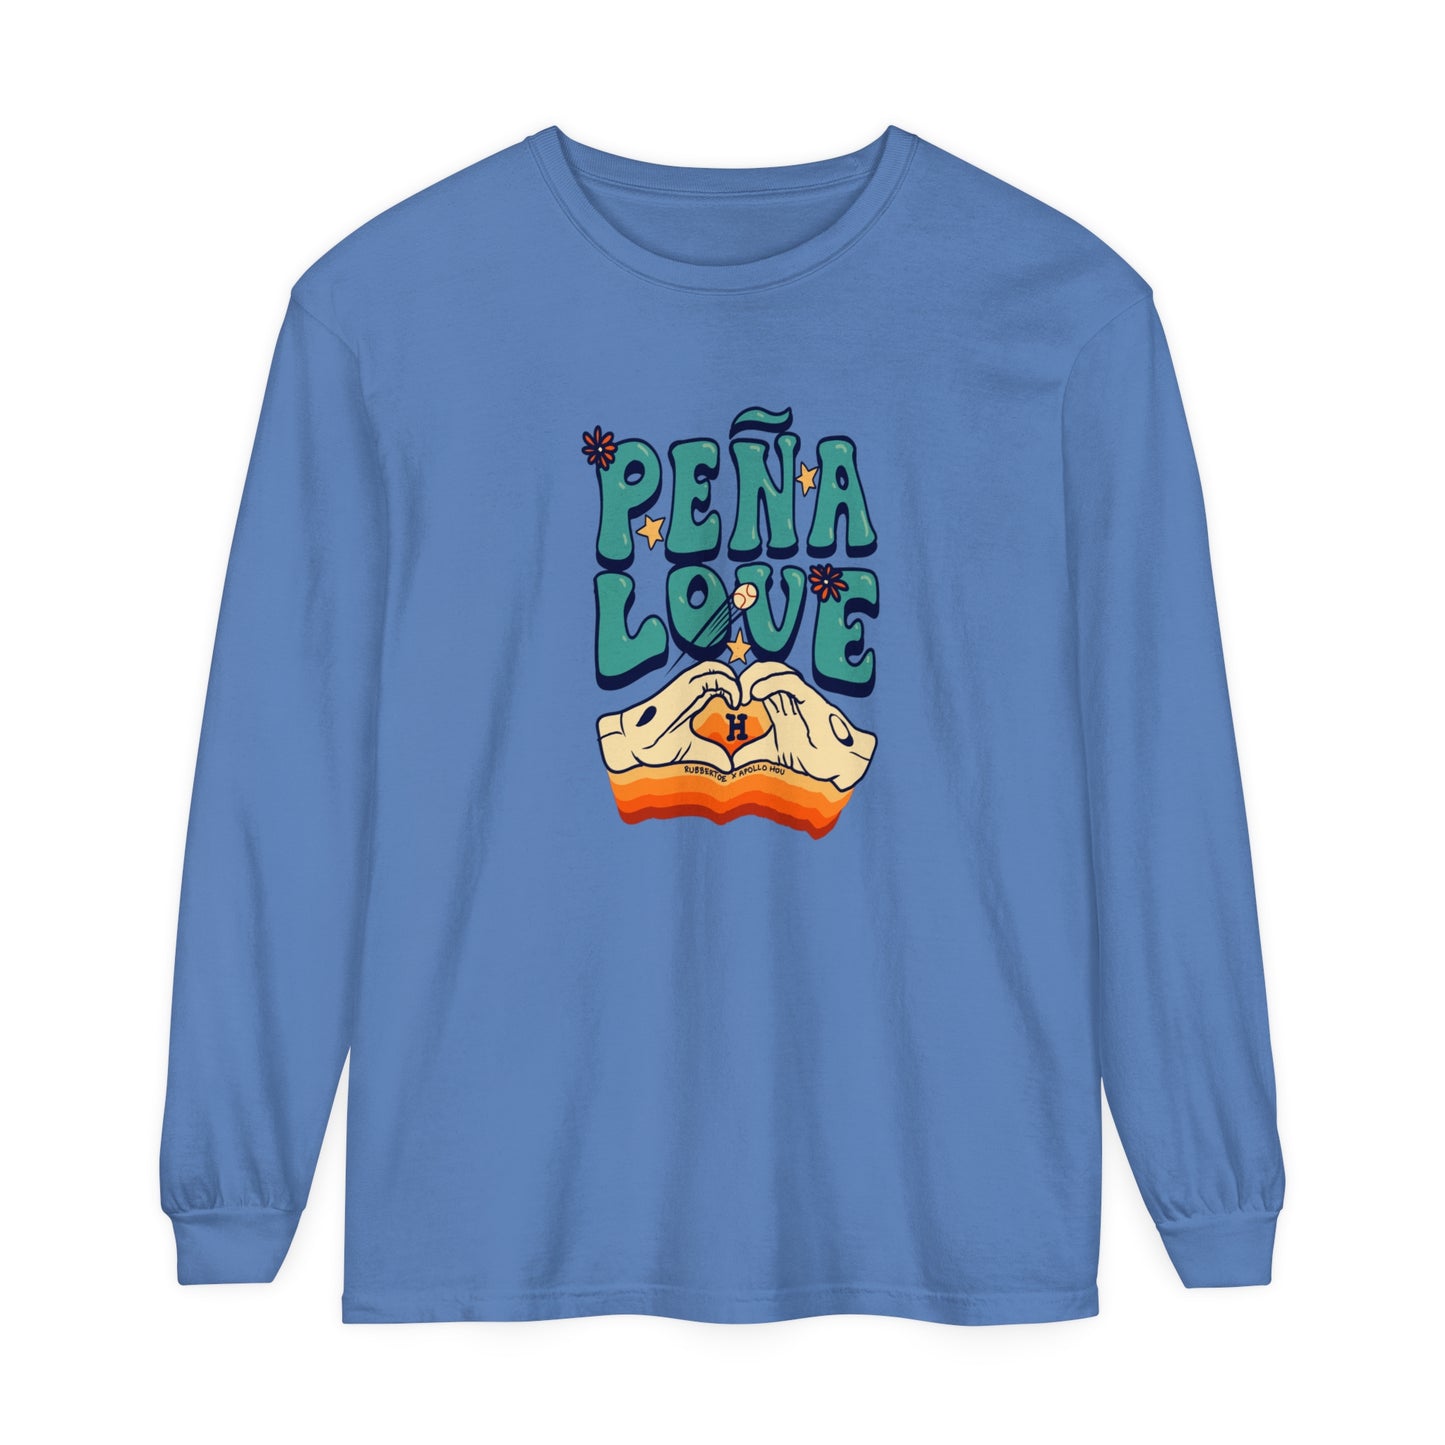 Peña Love Long Sleeve Tee